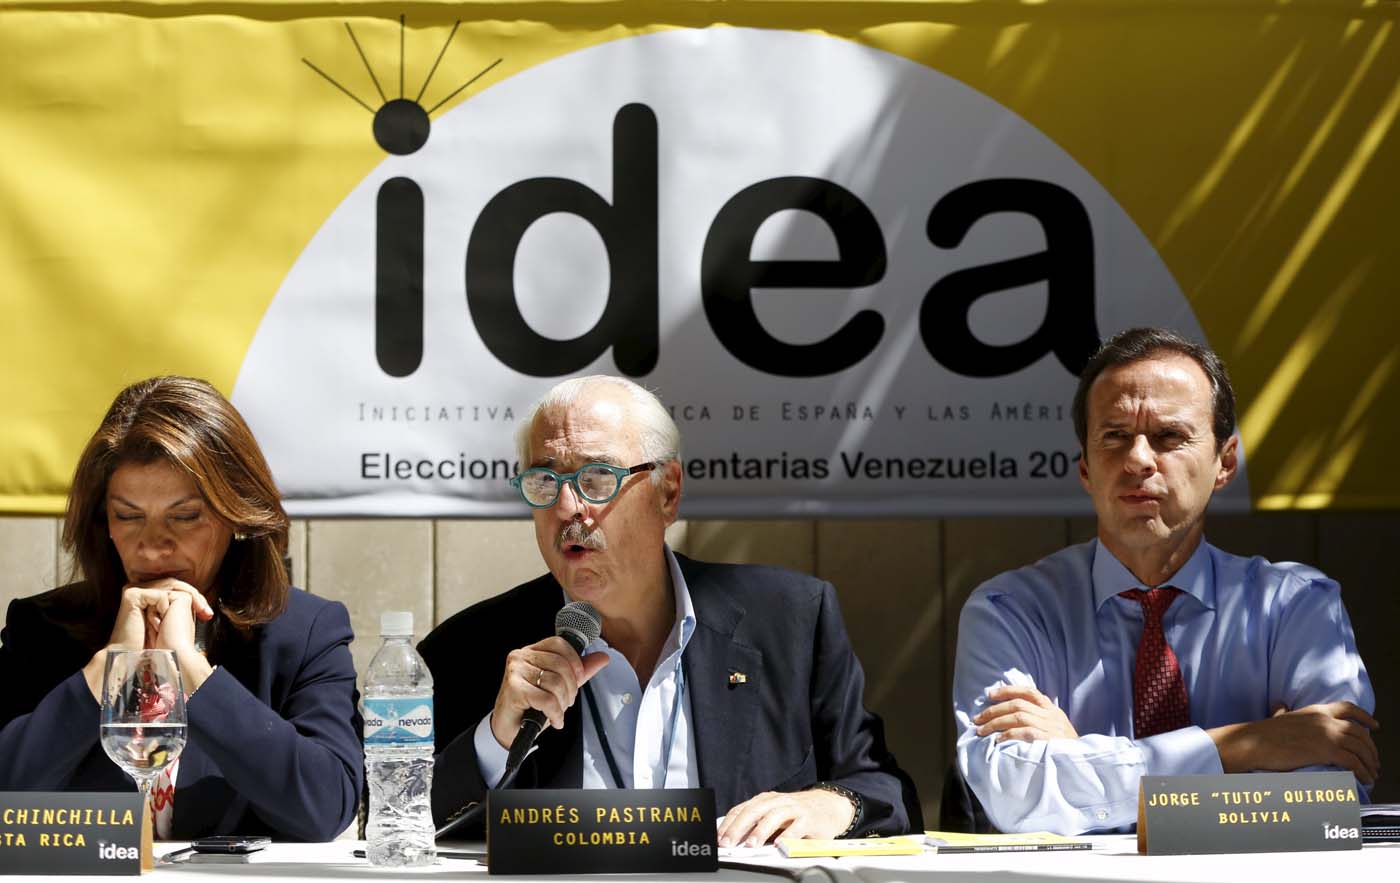 Expresidentes denuncian ruptura del orden constitucional y democrático en Venezuela